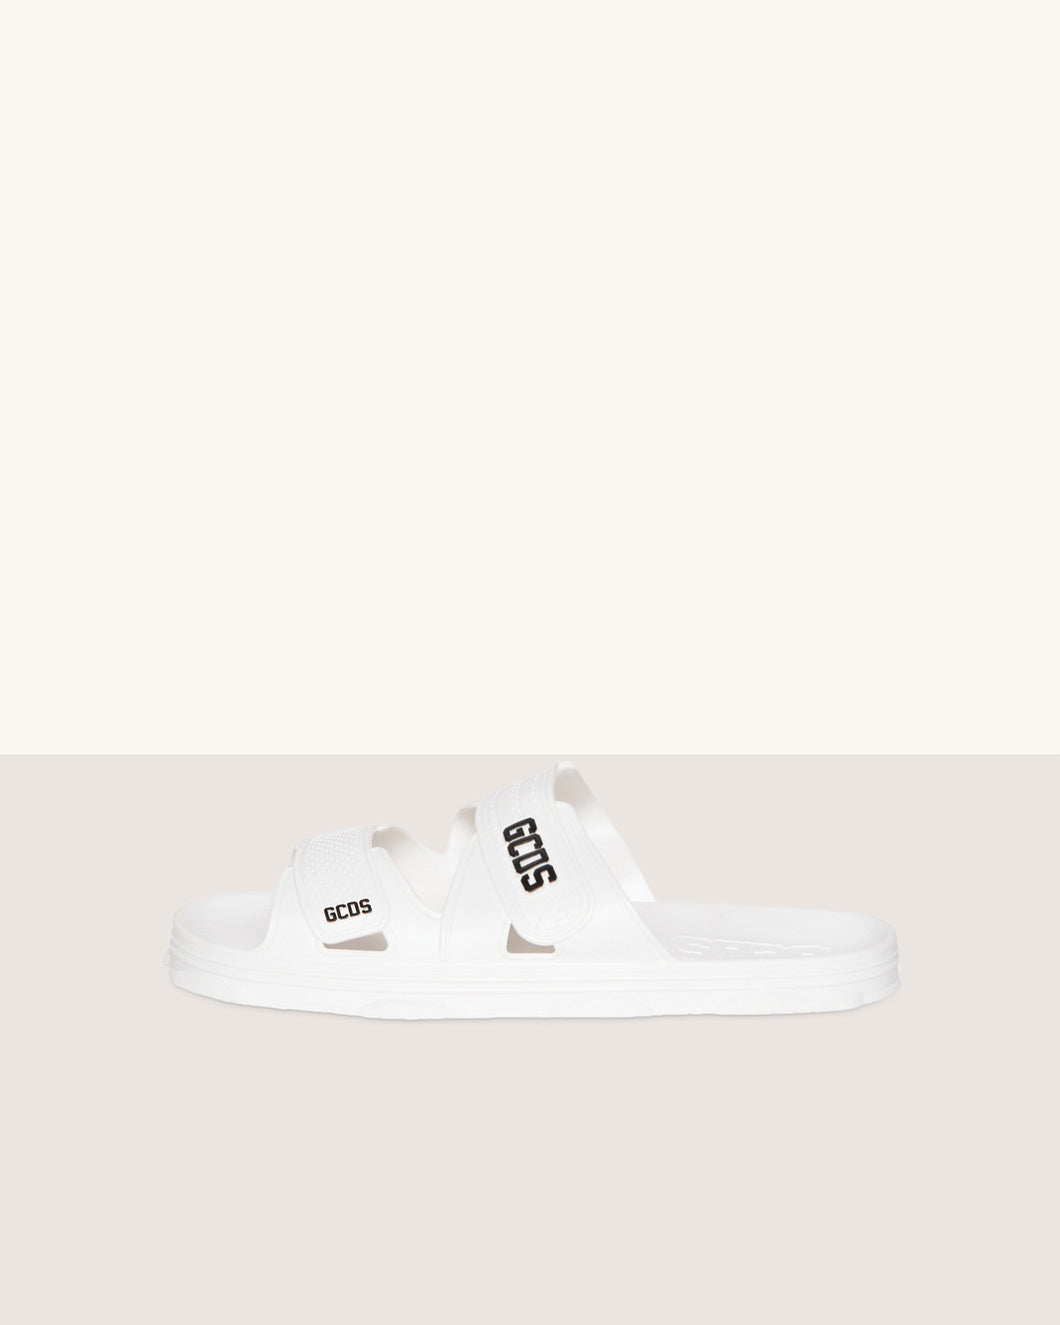 Rubber slider sandal: Unisex Shoes White | GCDS